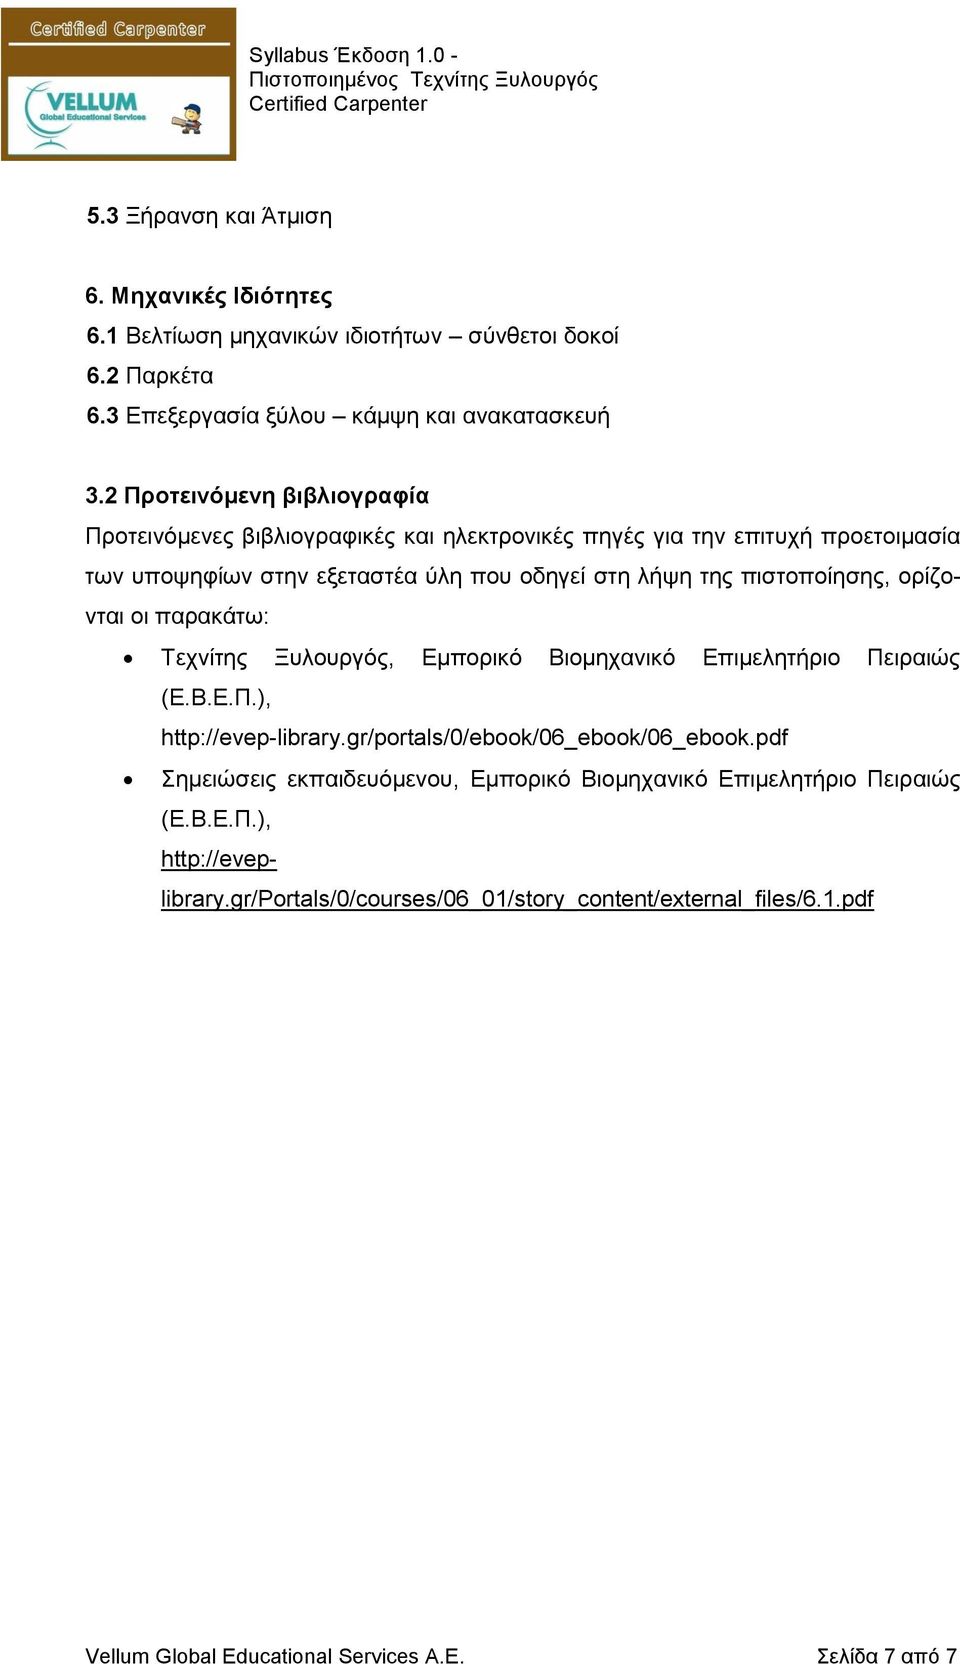 πιστοποίησης, ορίζονται οι παρακάτω: Τεχνίτης Ξυλουργός, Εμπορικό Βιομηχανικό Επιμελητήριο Πειραιώς (Ε.Β.Ε.Π.), http://evep-library.gr/portals/0/ebook/06_ebook/06_ebook.